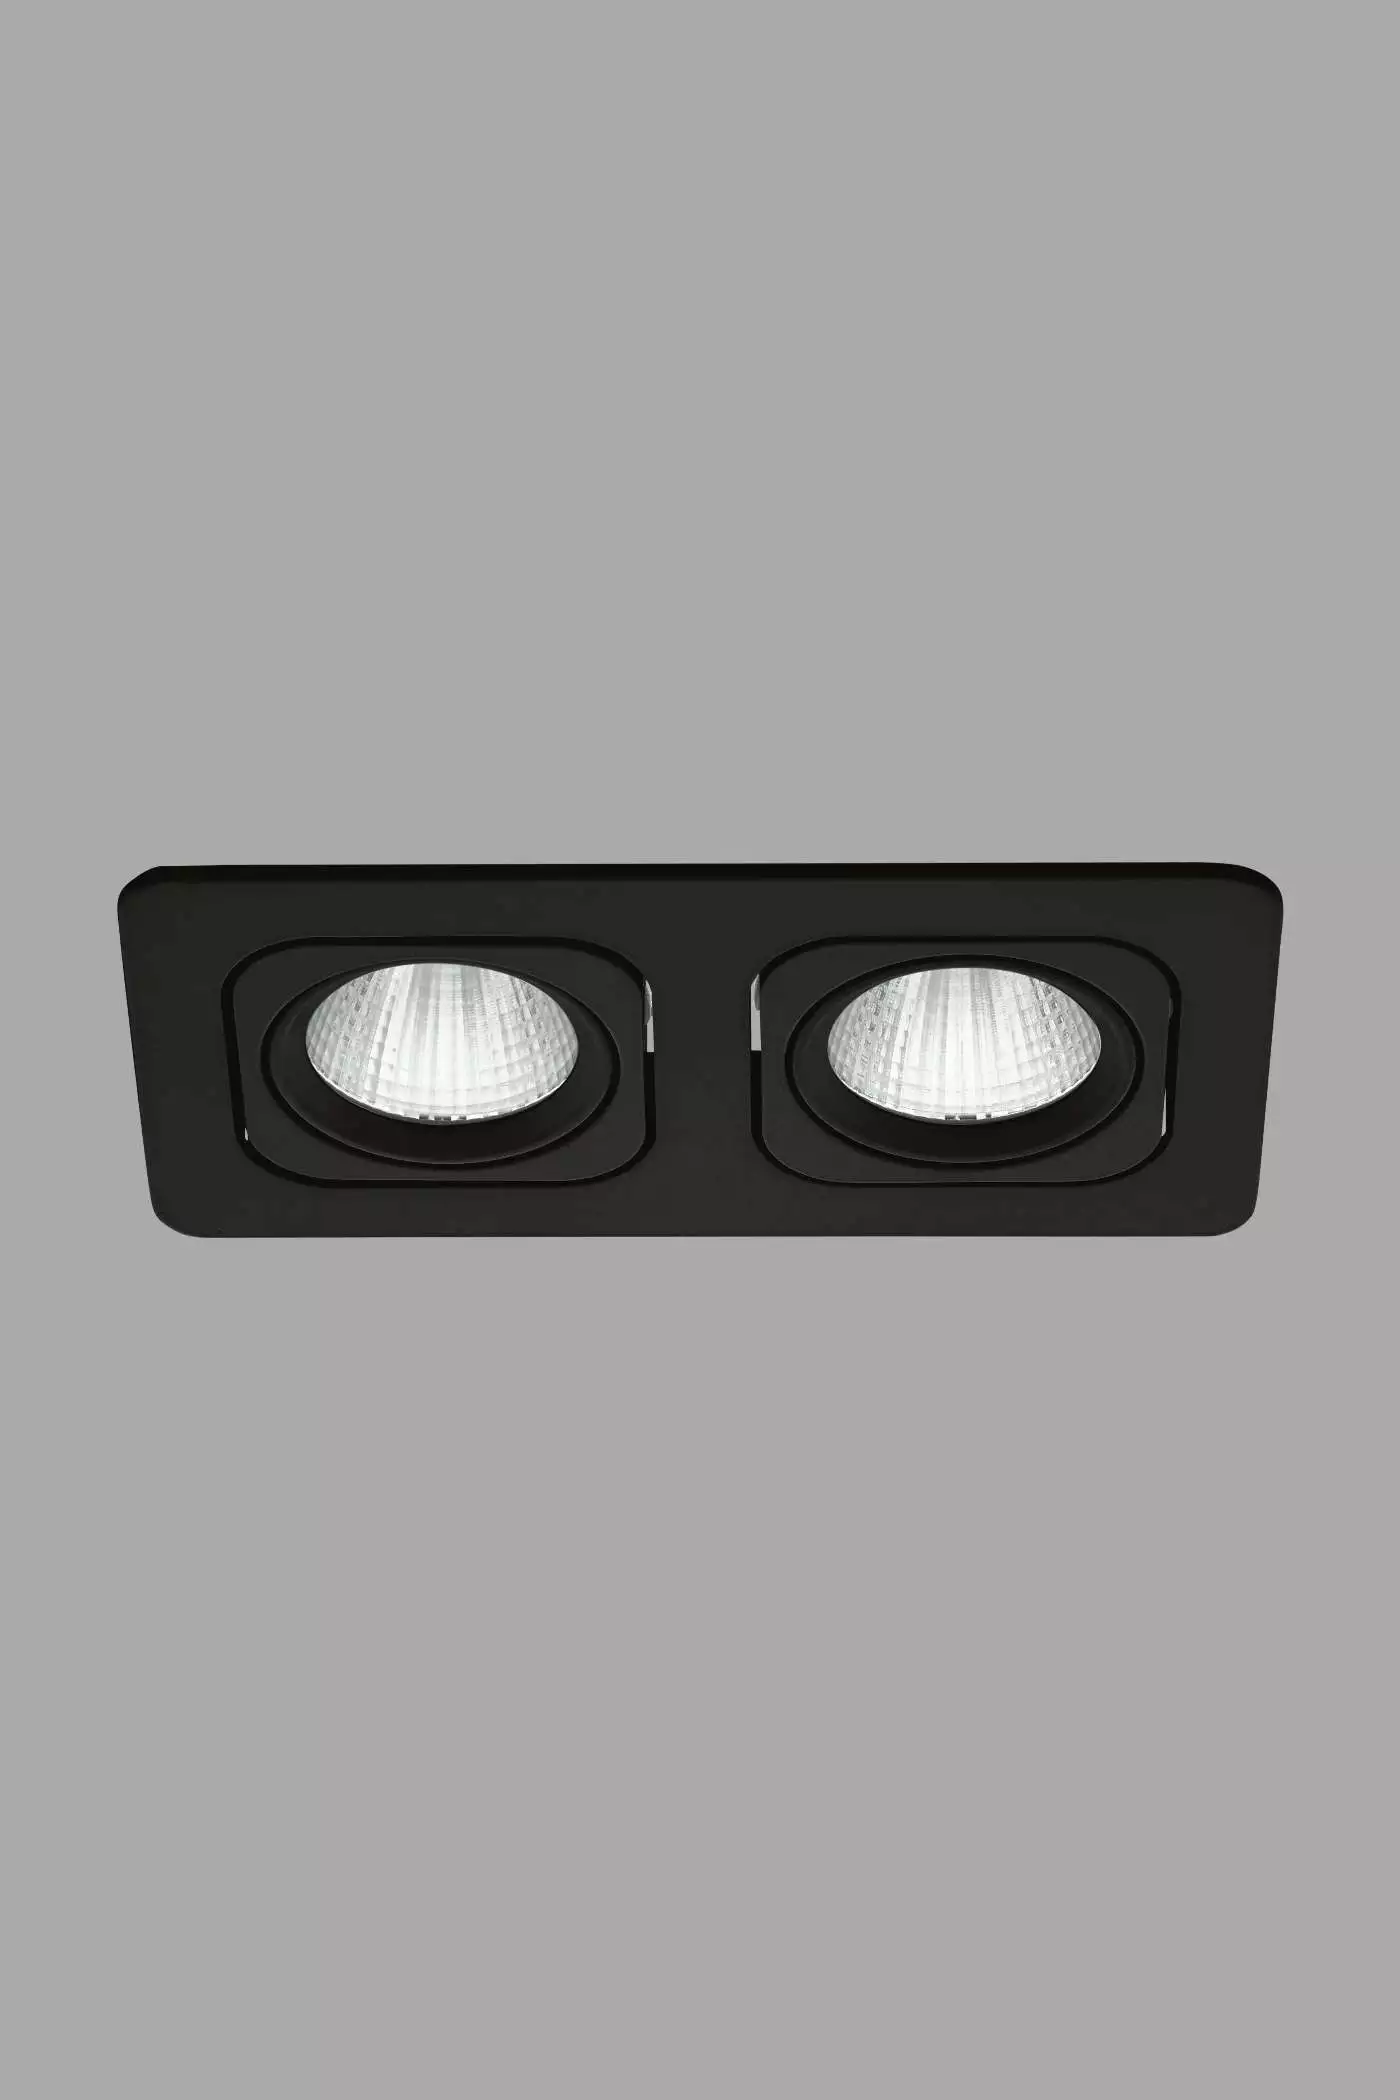   
                        Точечный светильник EGLO  (Австрия) 93606    
                         в стиле хай-тек.  
                        Тип источника света: встроенные светодиоды led.                         Форма: прямоугольник.                                                                          фото 1